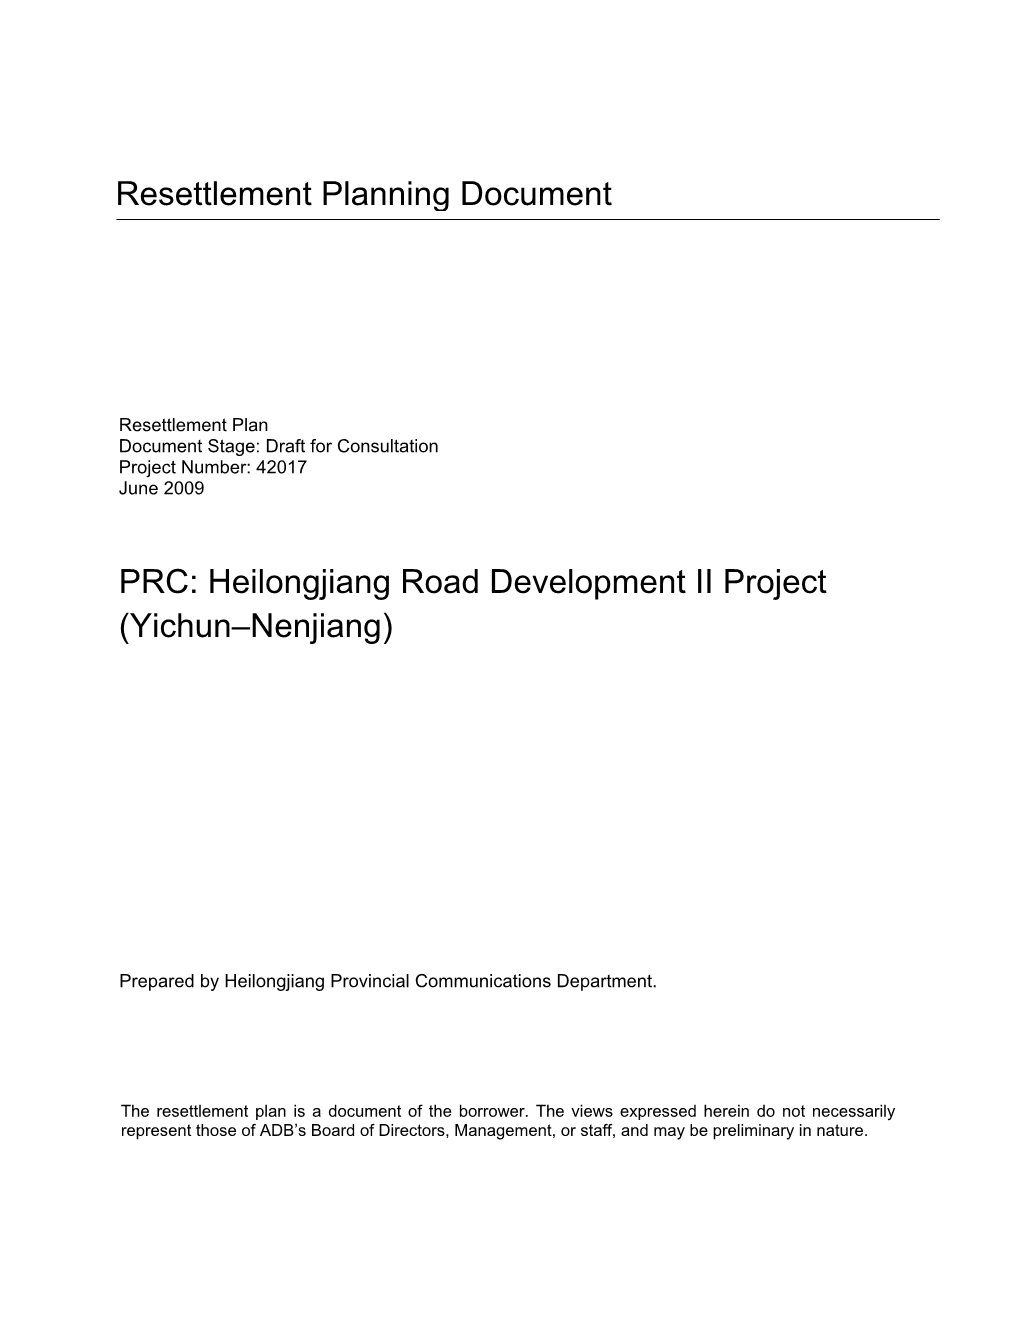 Heilongjiang Road Development II Project (Yichun–Nenjiang)